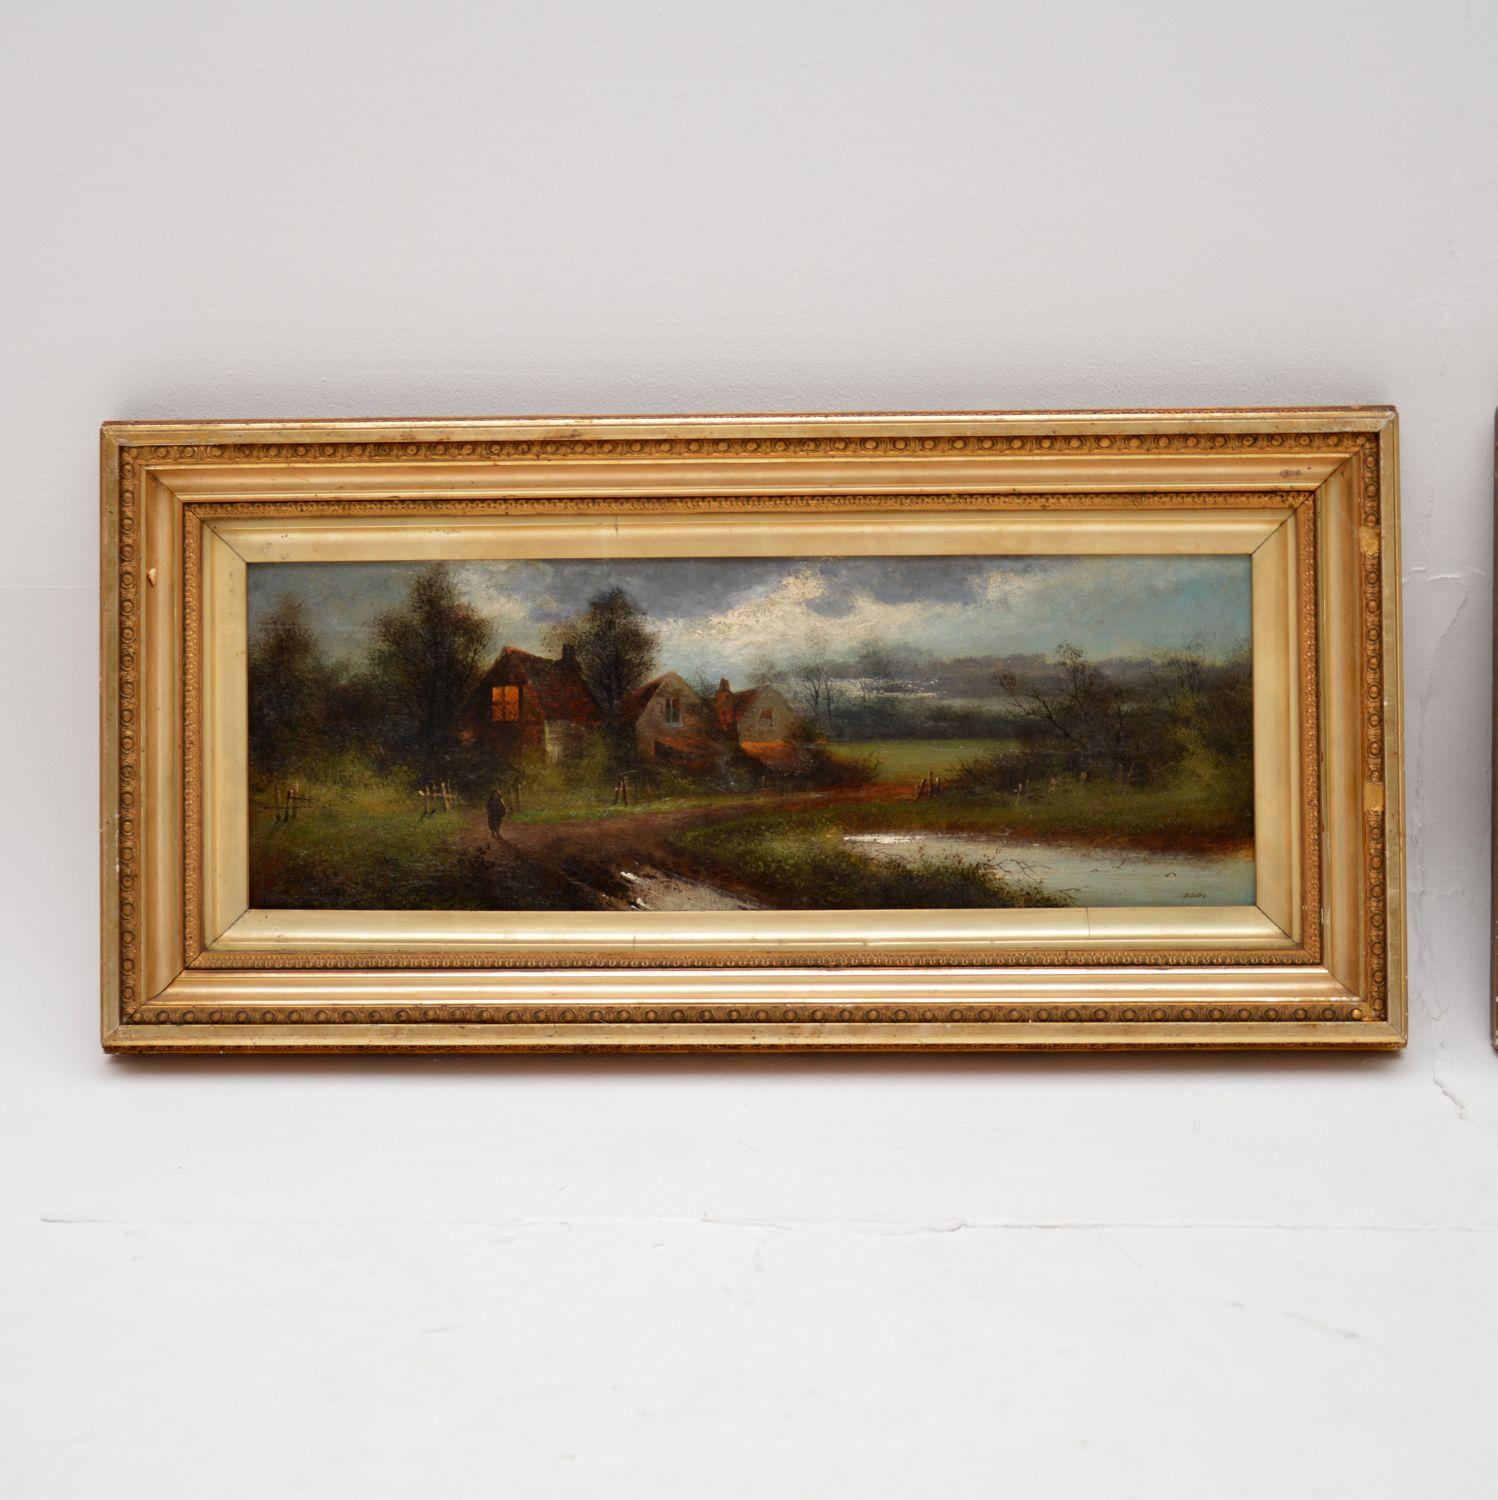 Une belle paire de peintures à l'huile de paysages antiques par A.I.C. Jona. Fabriqués en Angleterre, ils datent d'environ 1880-1900.

Les peintures sont magnifiquement exécutées, représentant une scène de lac de campagne, il semble qu'il s'agisse